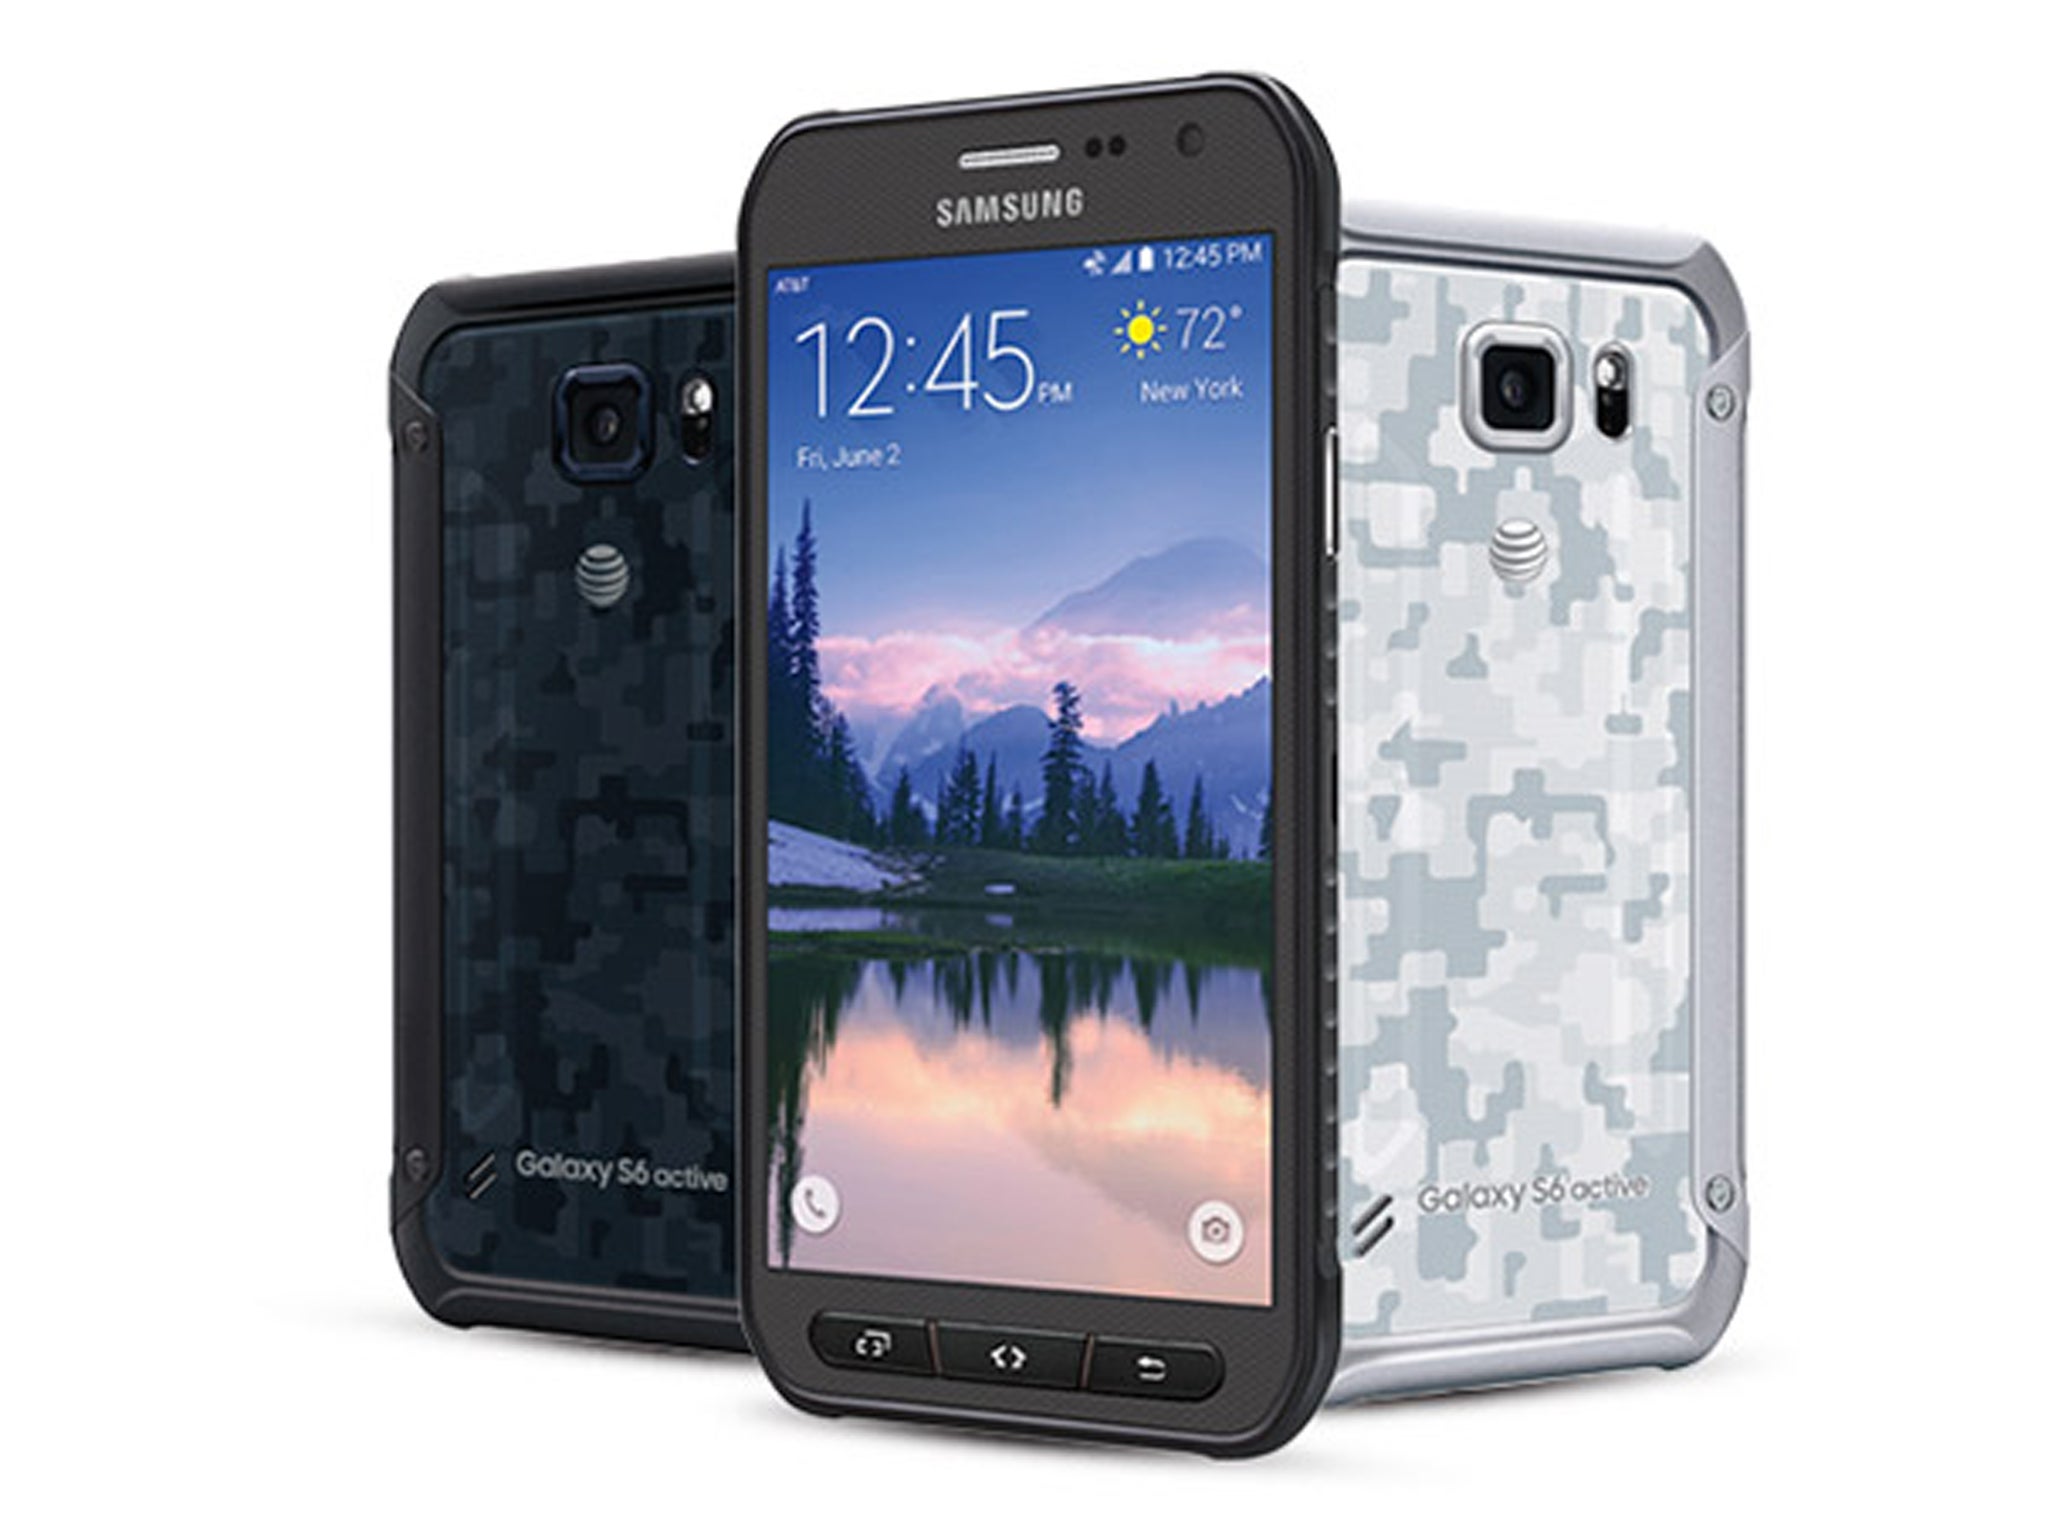 Samsung Galaxy S6 Active aparece en certificación Bluetooth